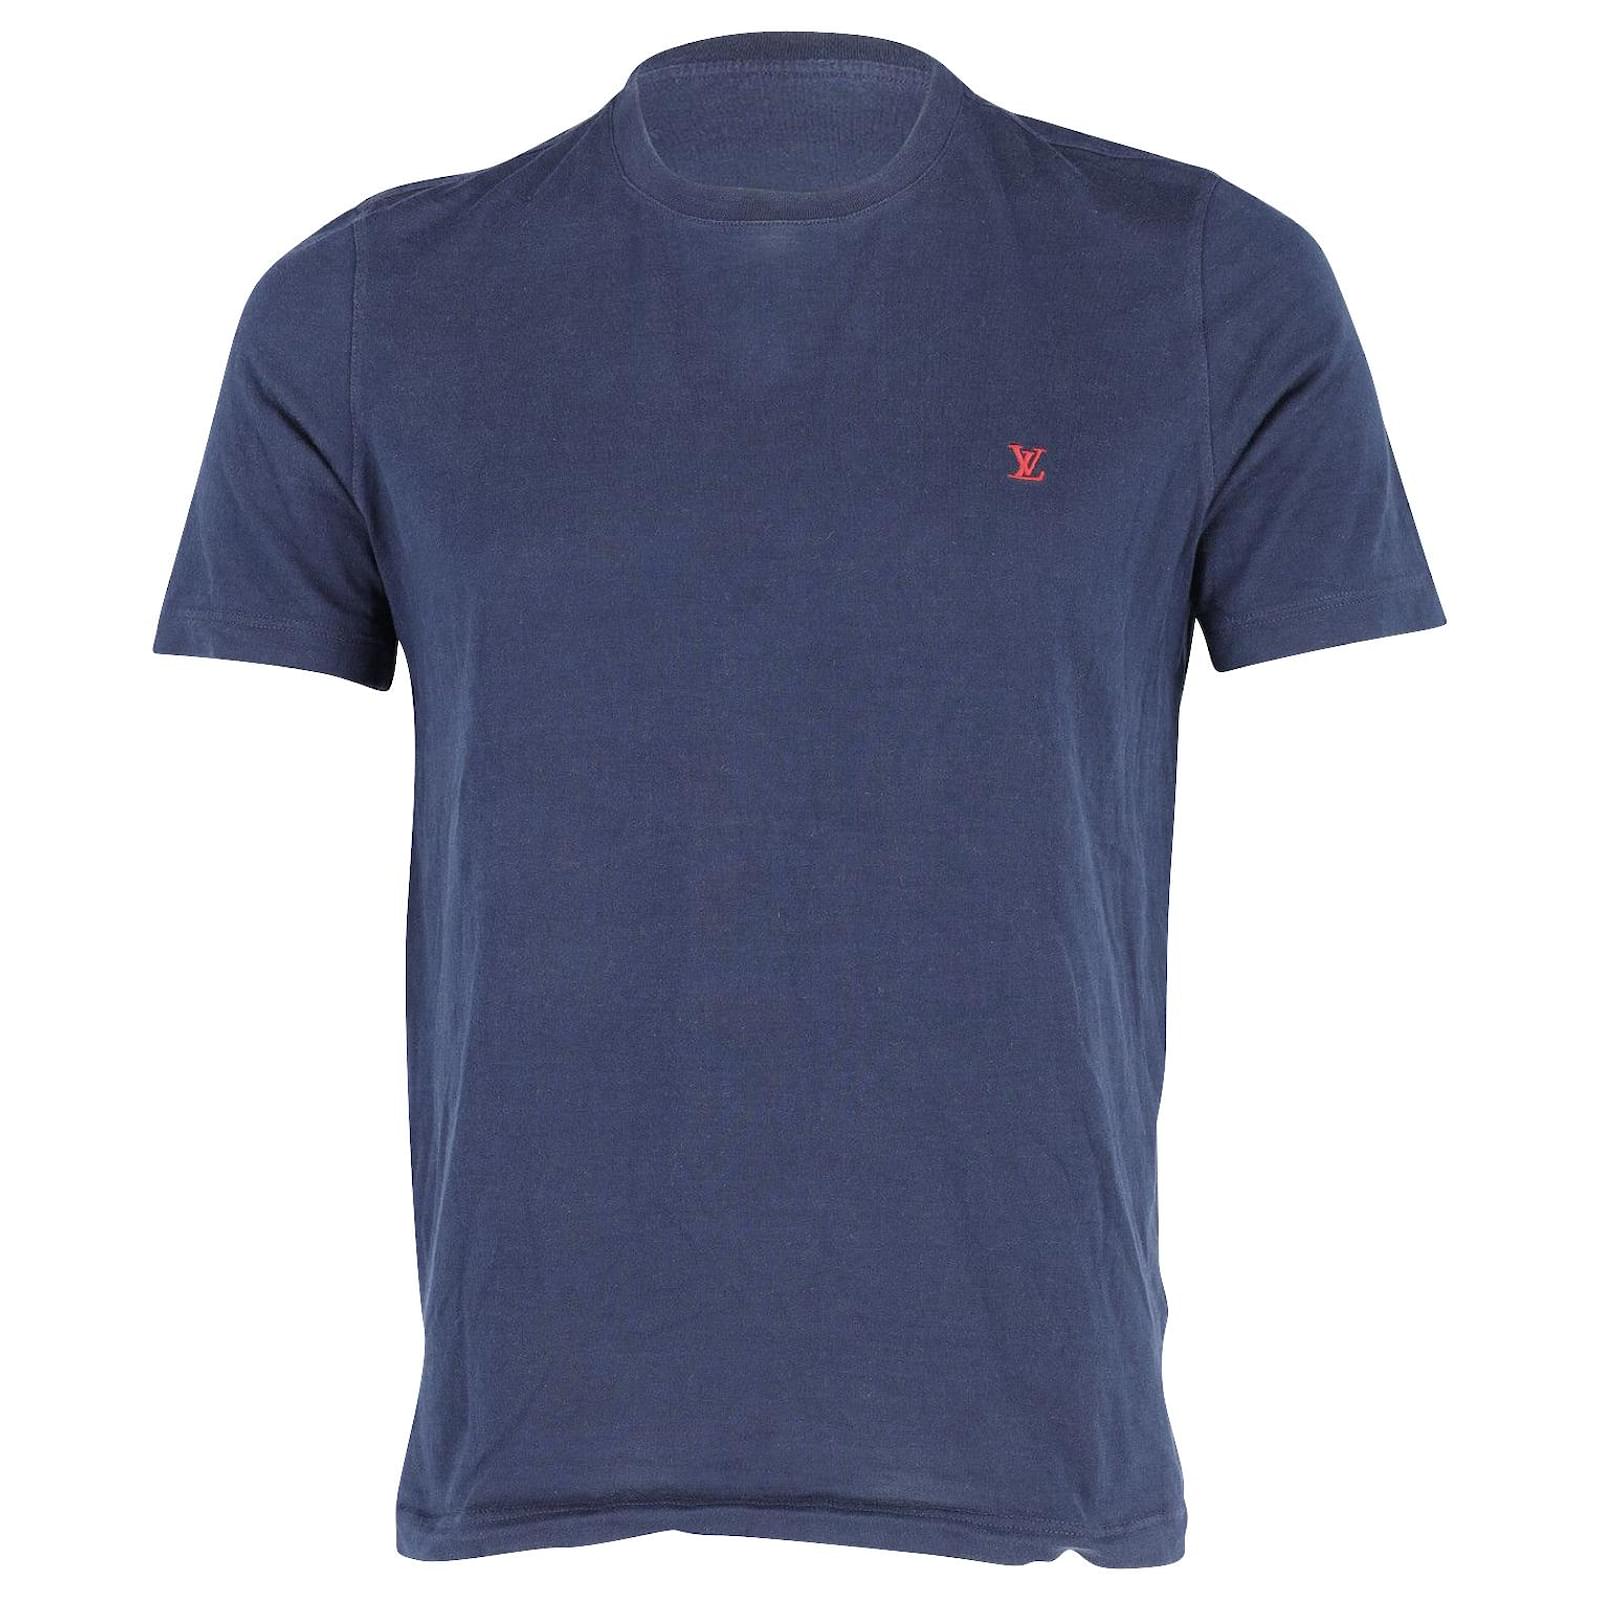 Louis Vuitton Mens Crew Neck T-Shirts, Blue, L